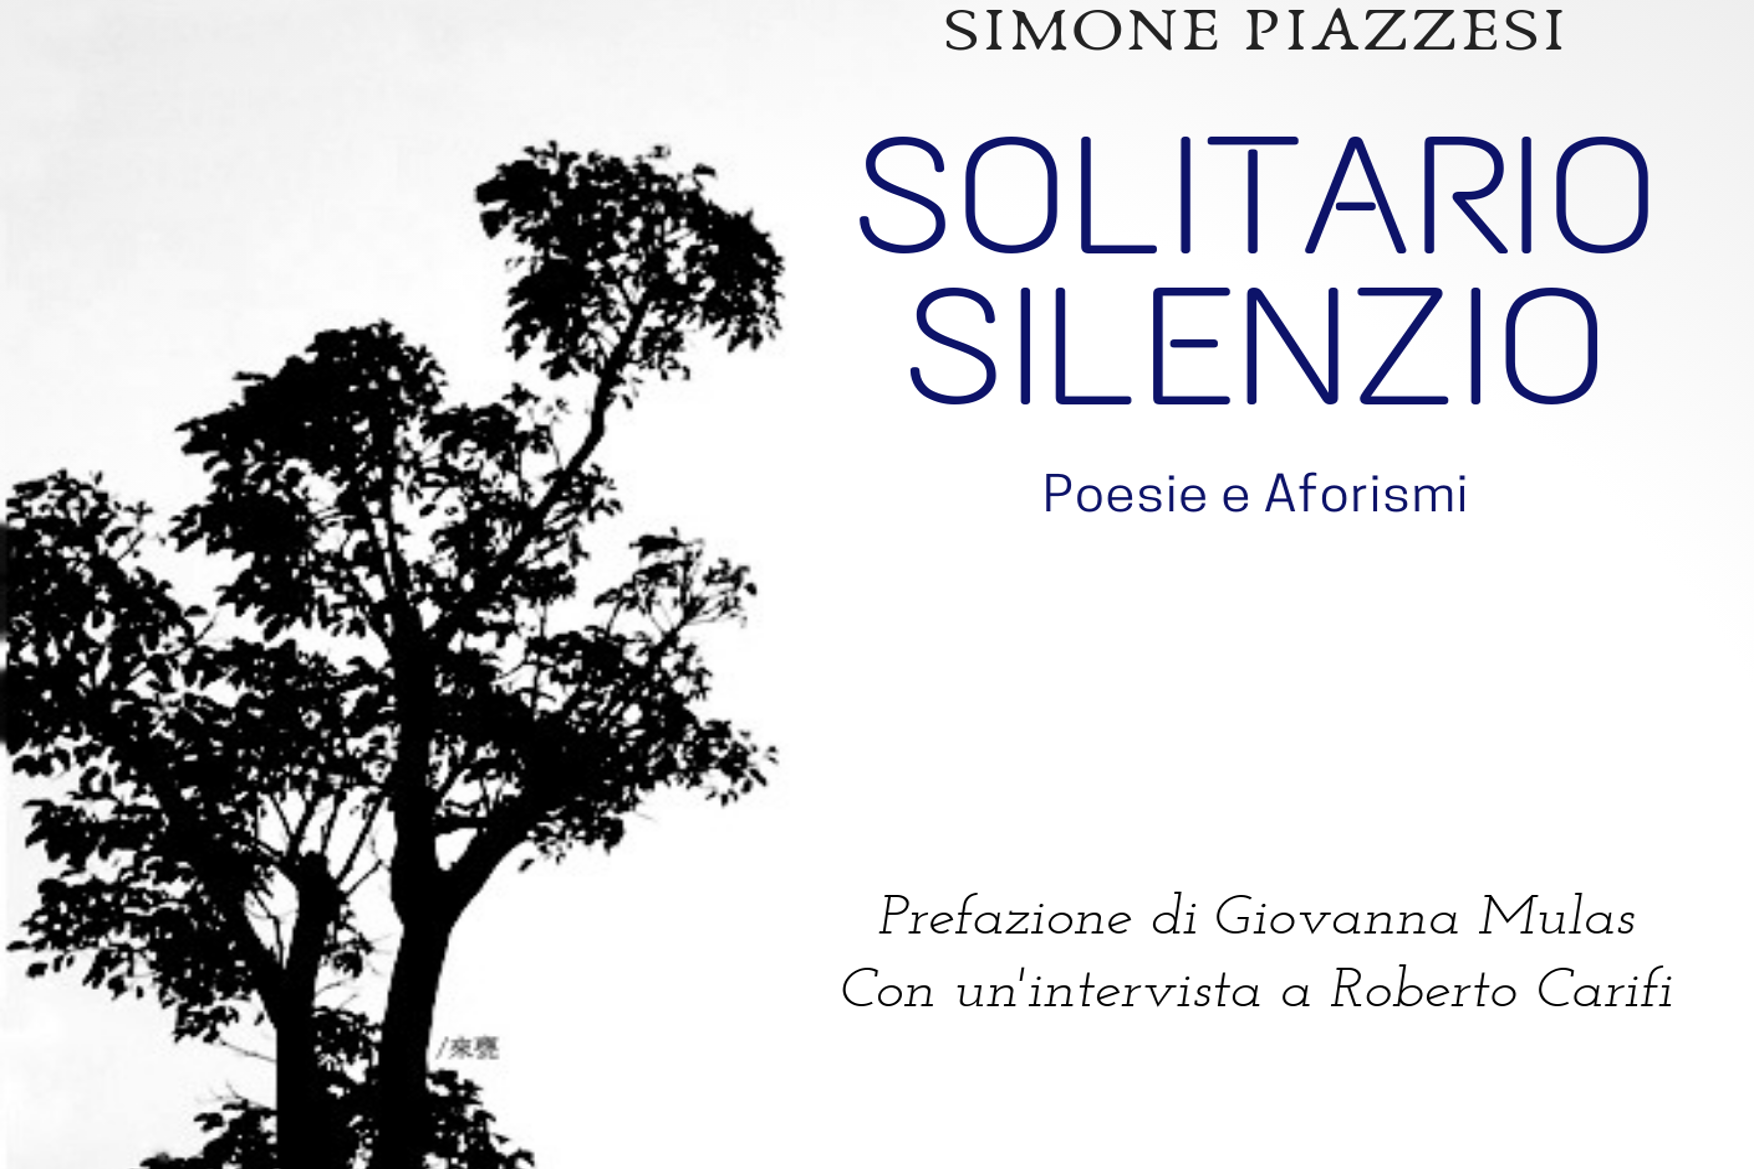 La poesia di Simone Piazzesi